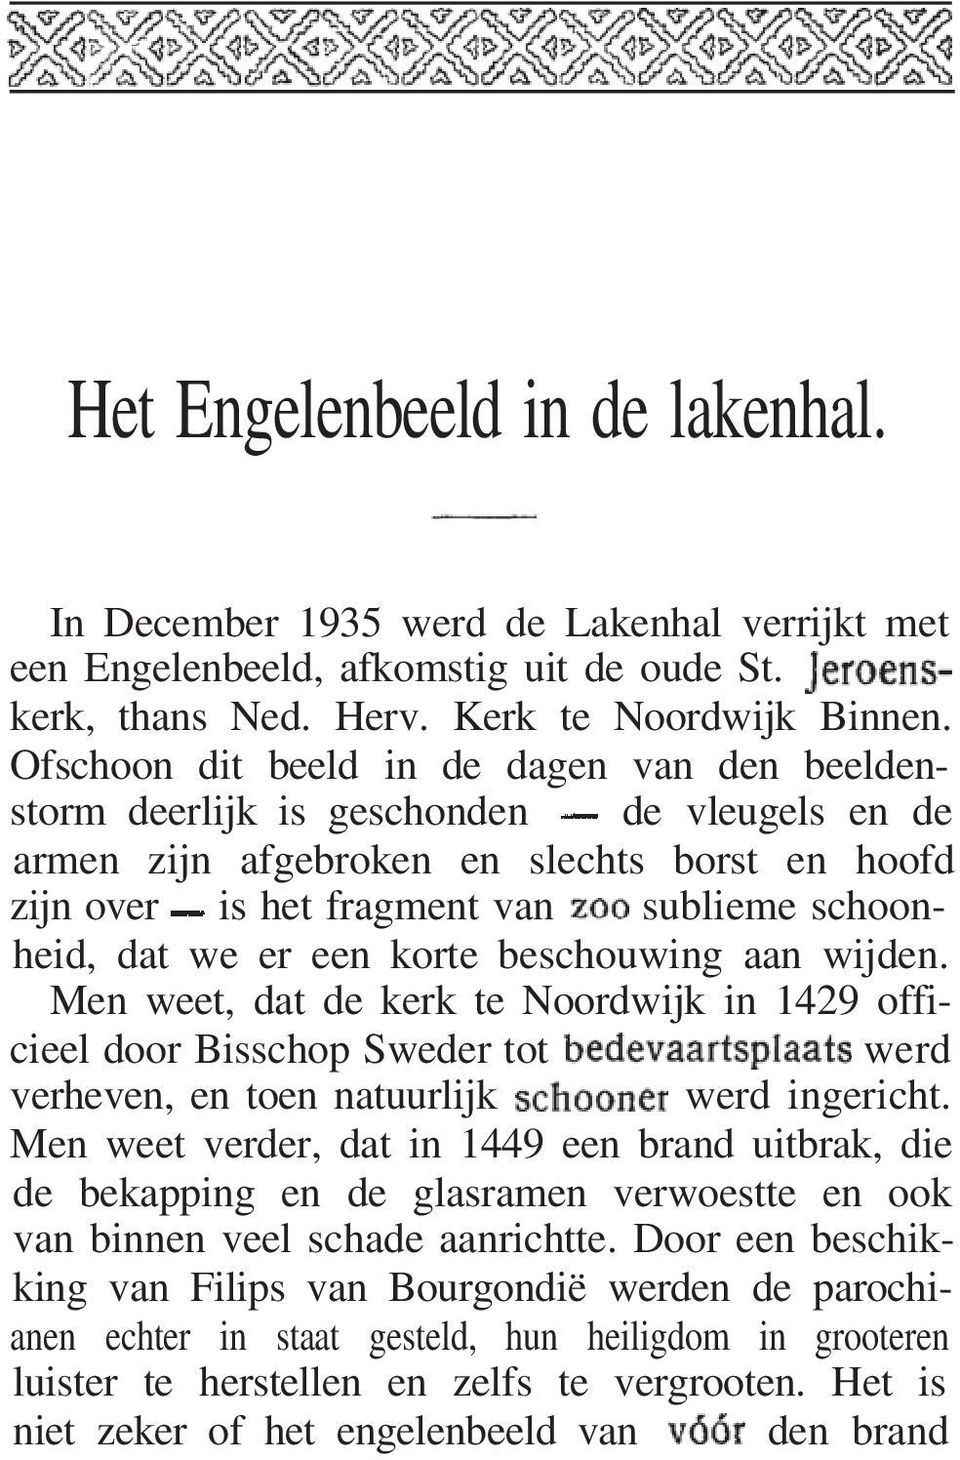 er een korte beschouwing aan wijden. Men weet, dat de kerk te Noordwijk in 1429 officieel door Bisschop Sweder tot werd verheven, en toen natuurlijk werd ingericht.